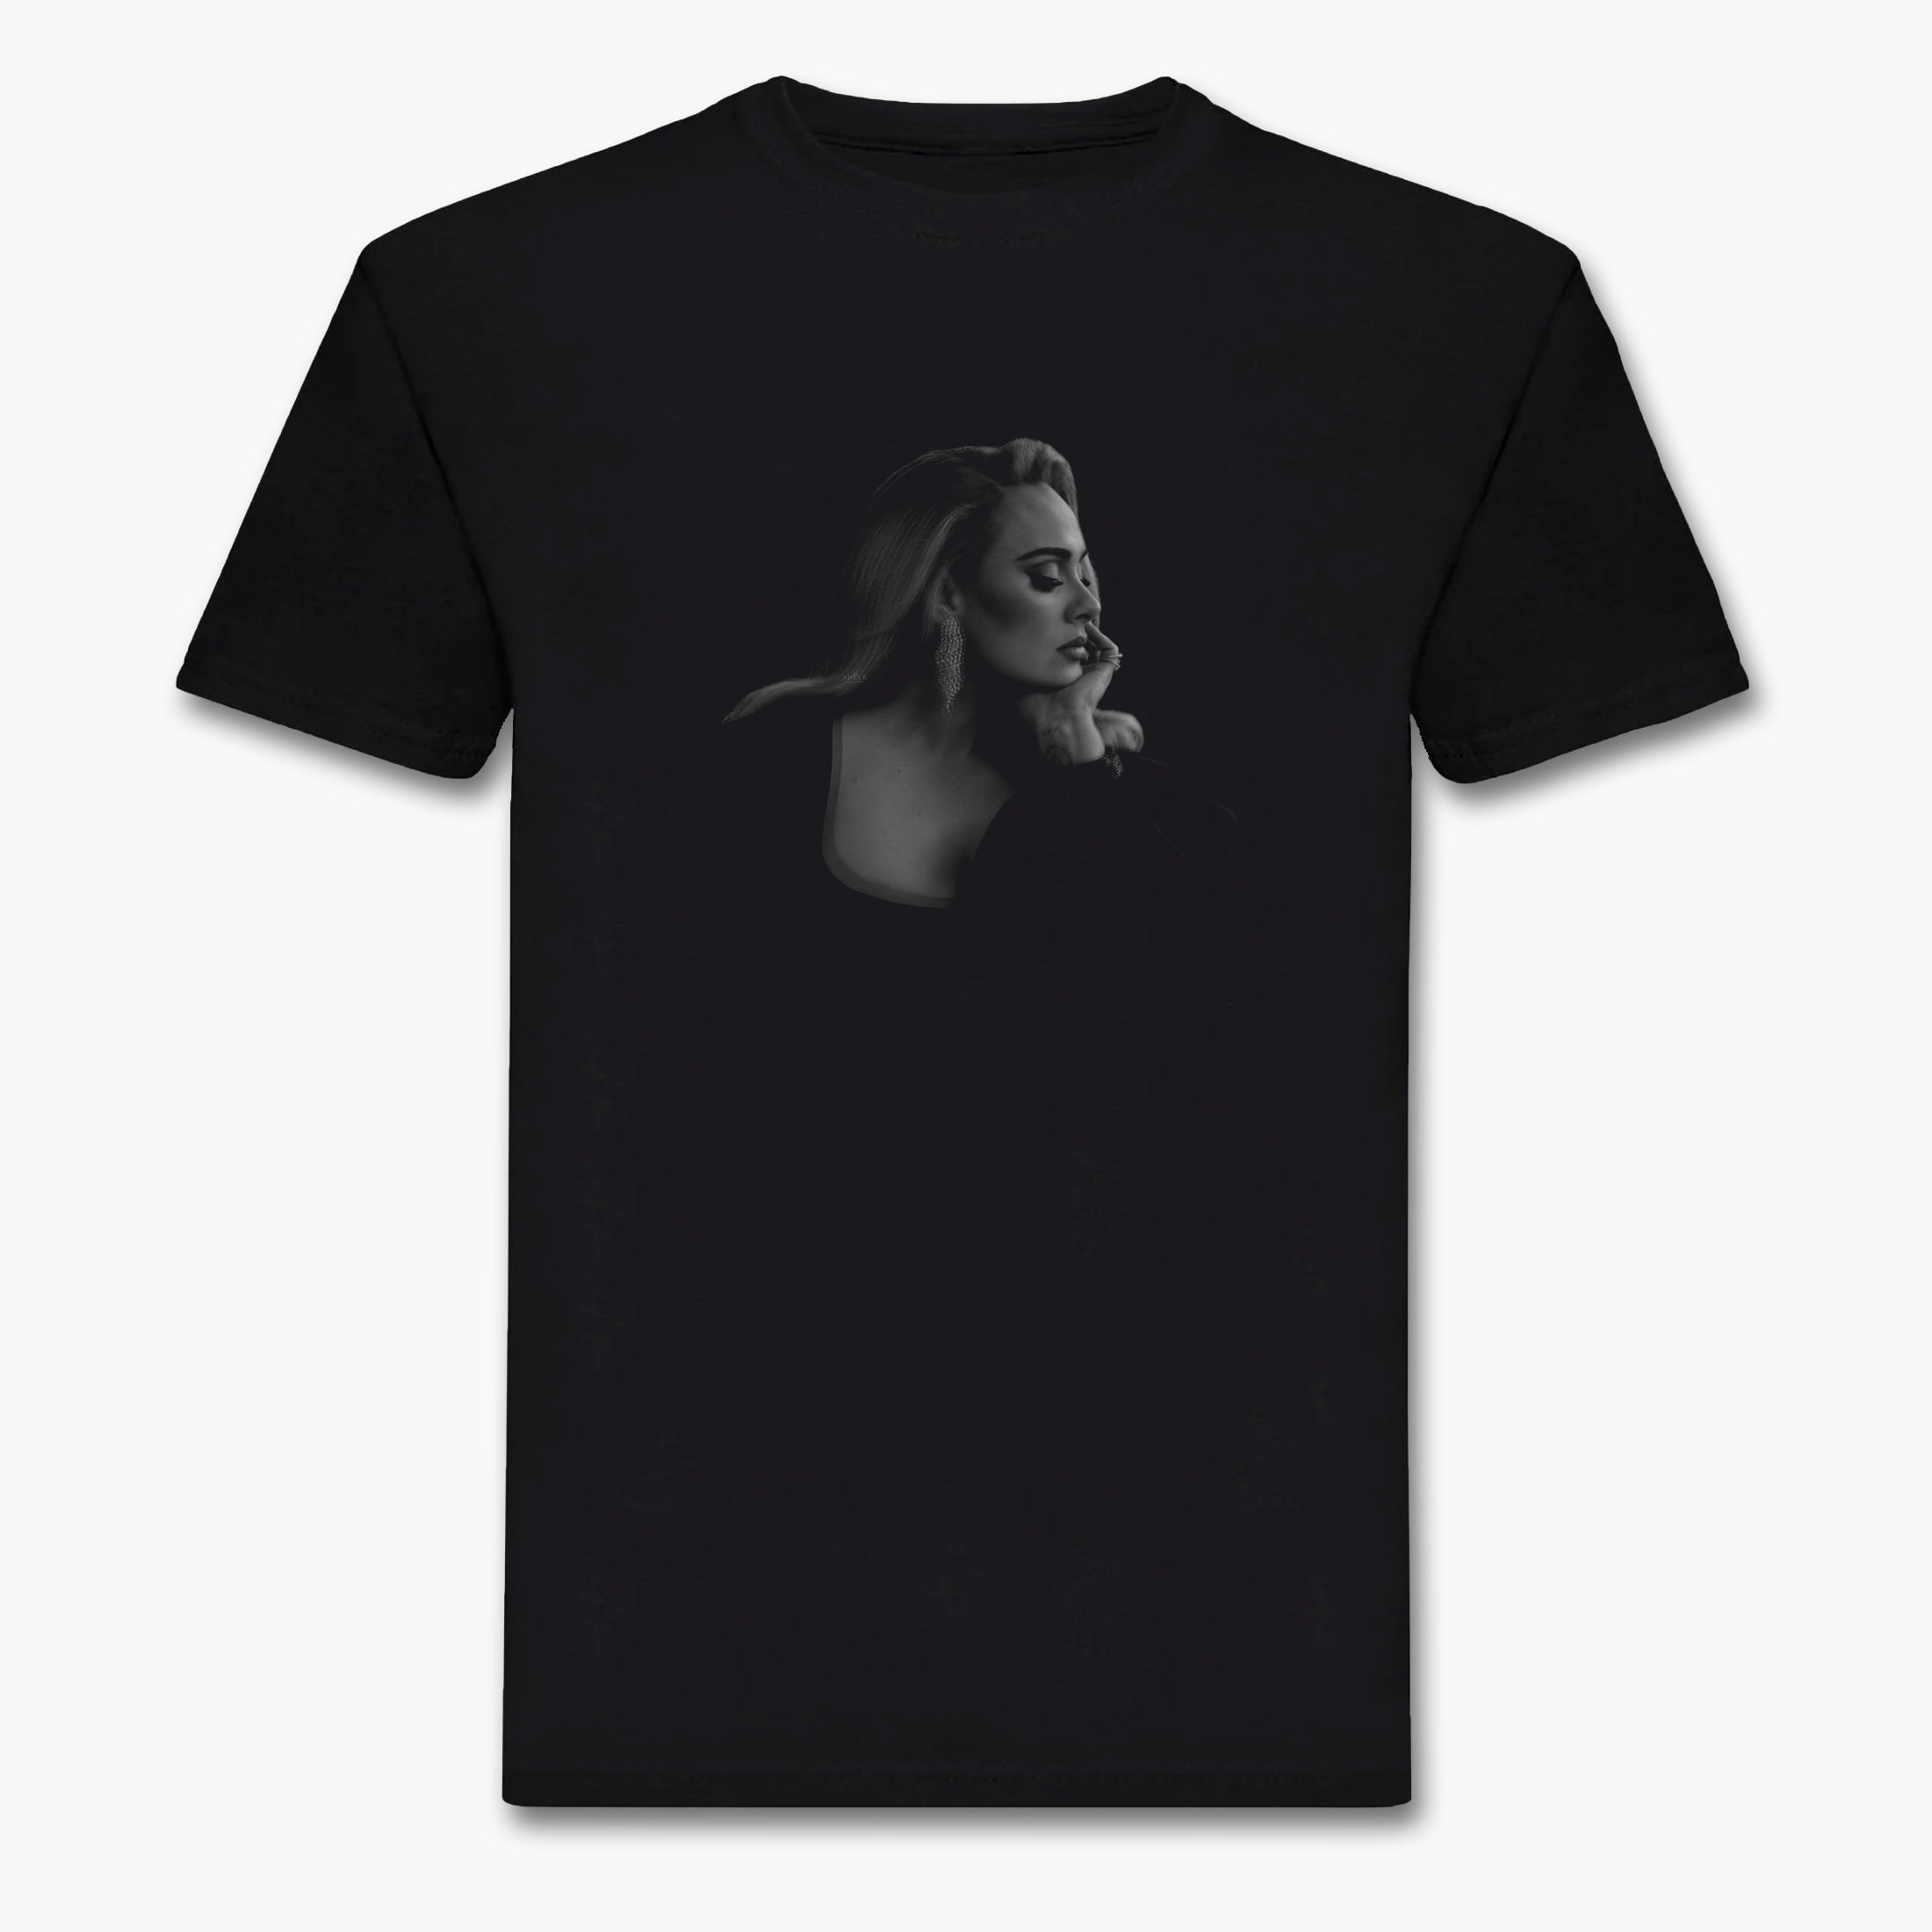 Adele T-shirt. Adele Graphic Tee. Iconic Photo T-shirt